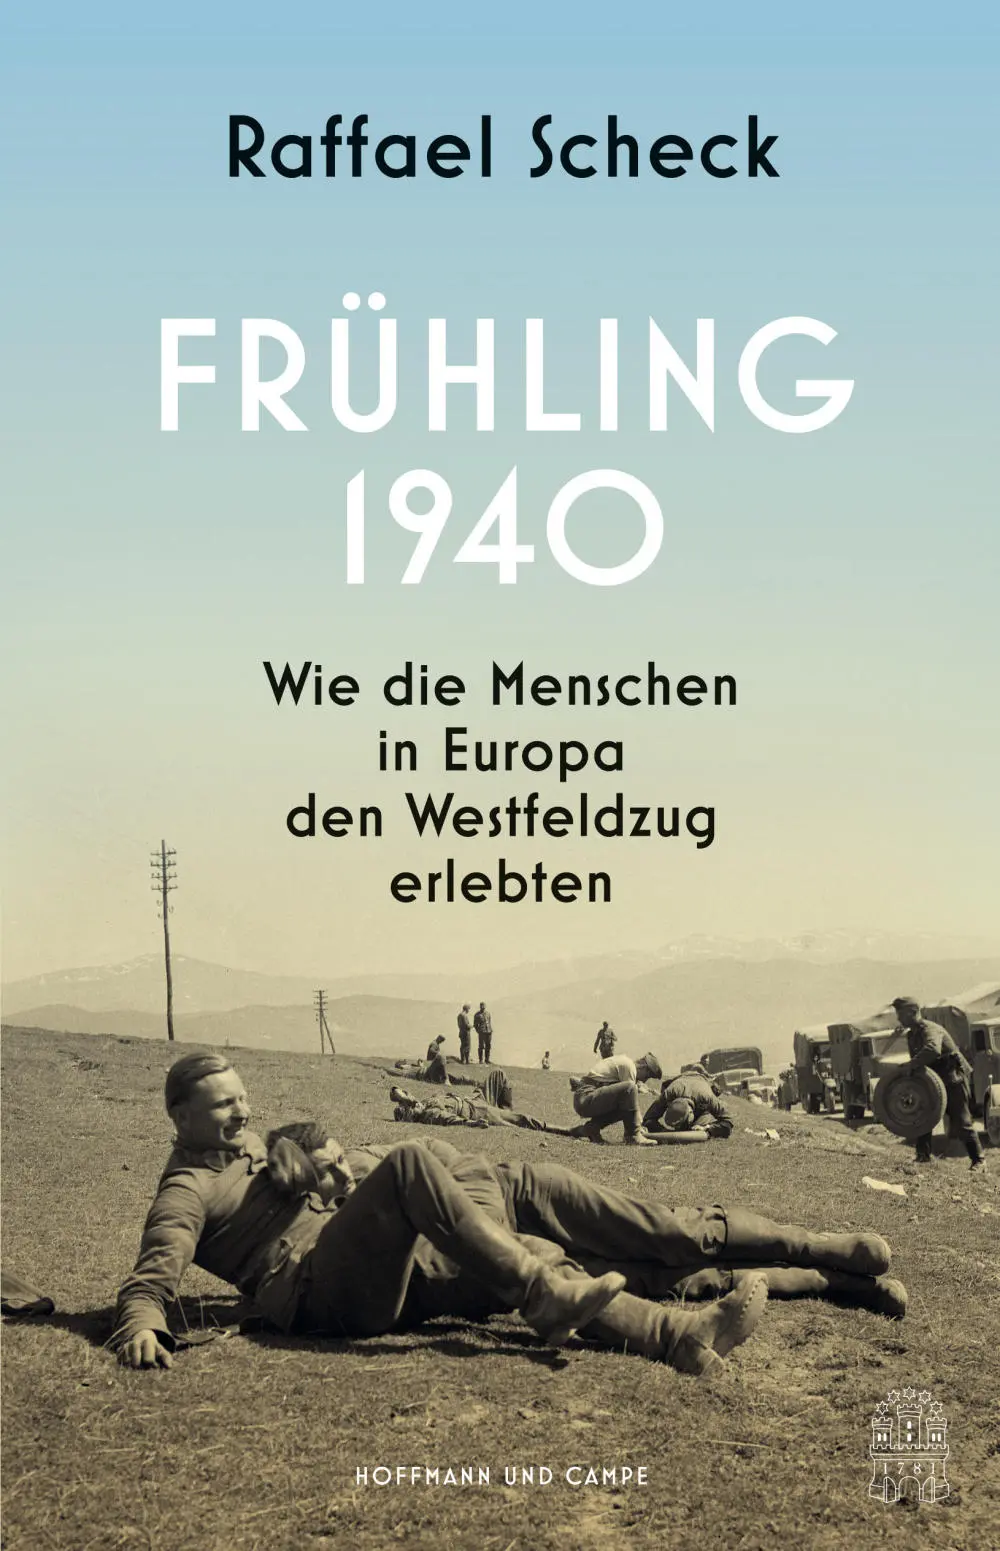 Buchcover: "Frühling 1949"